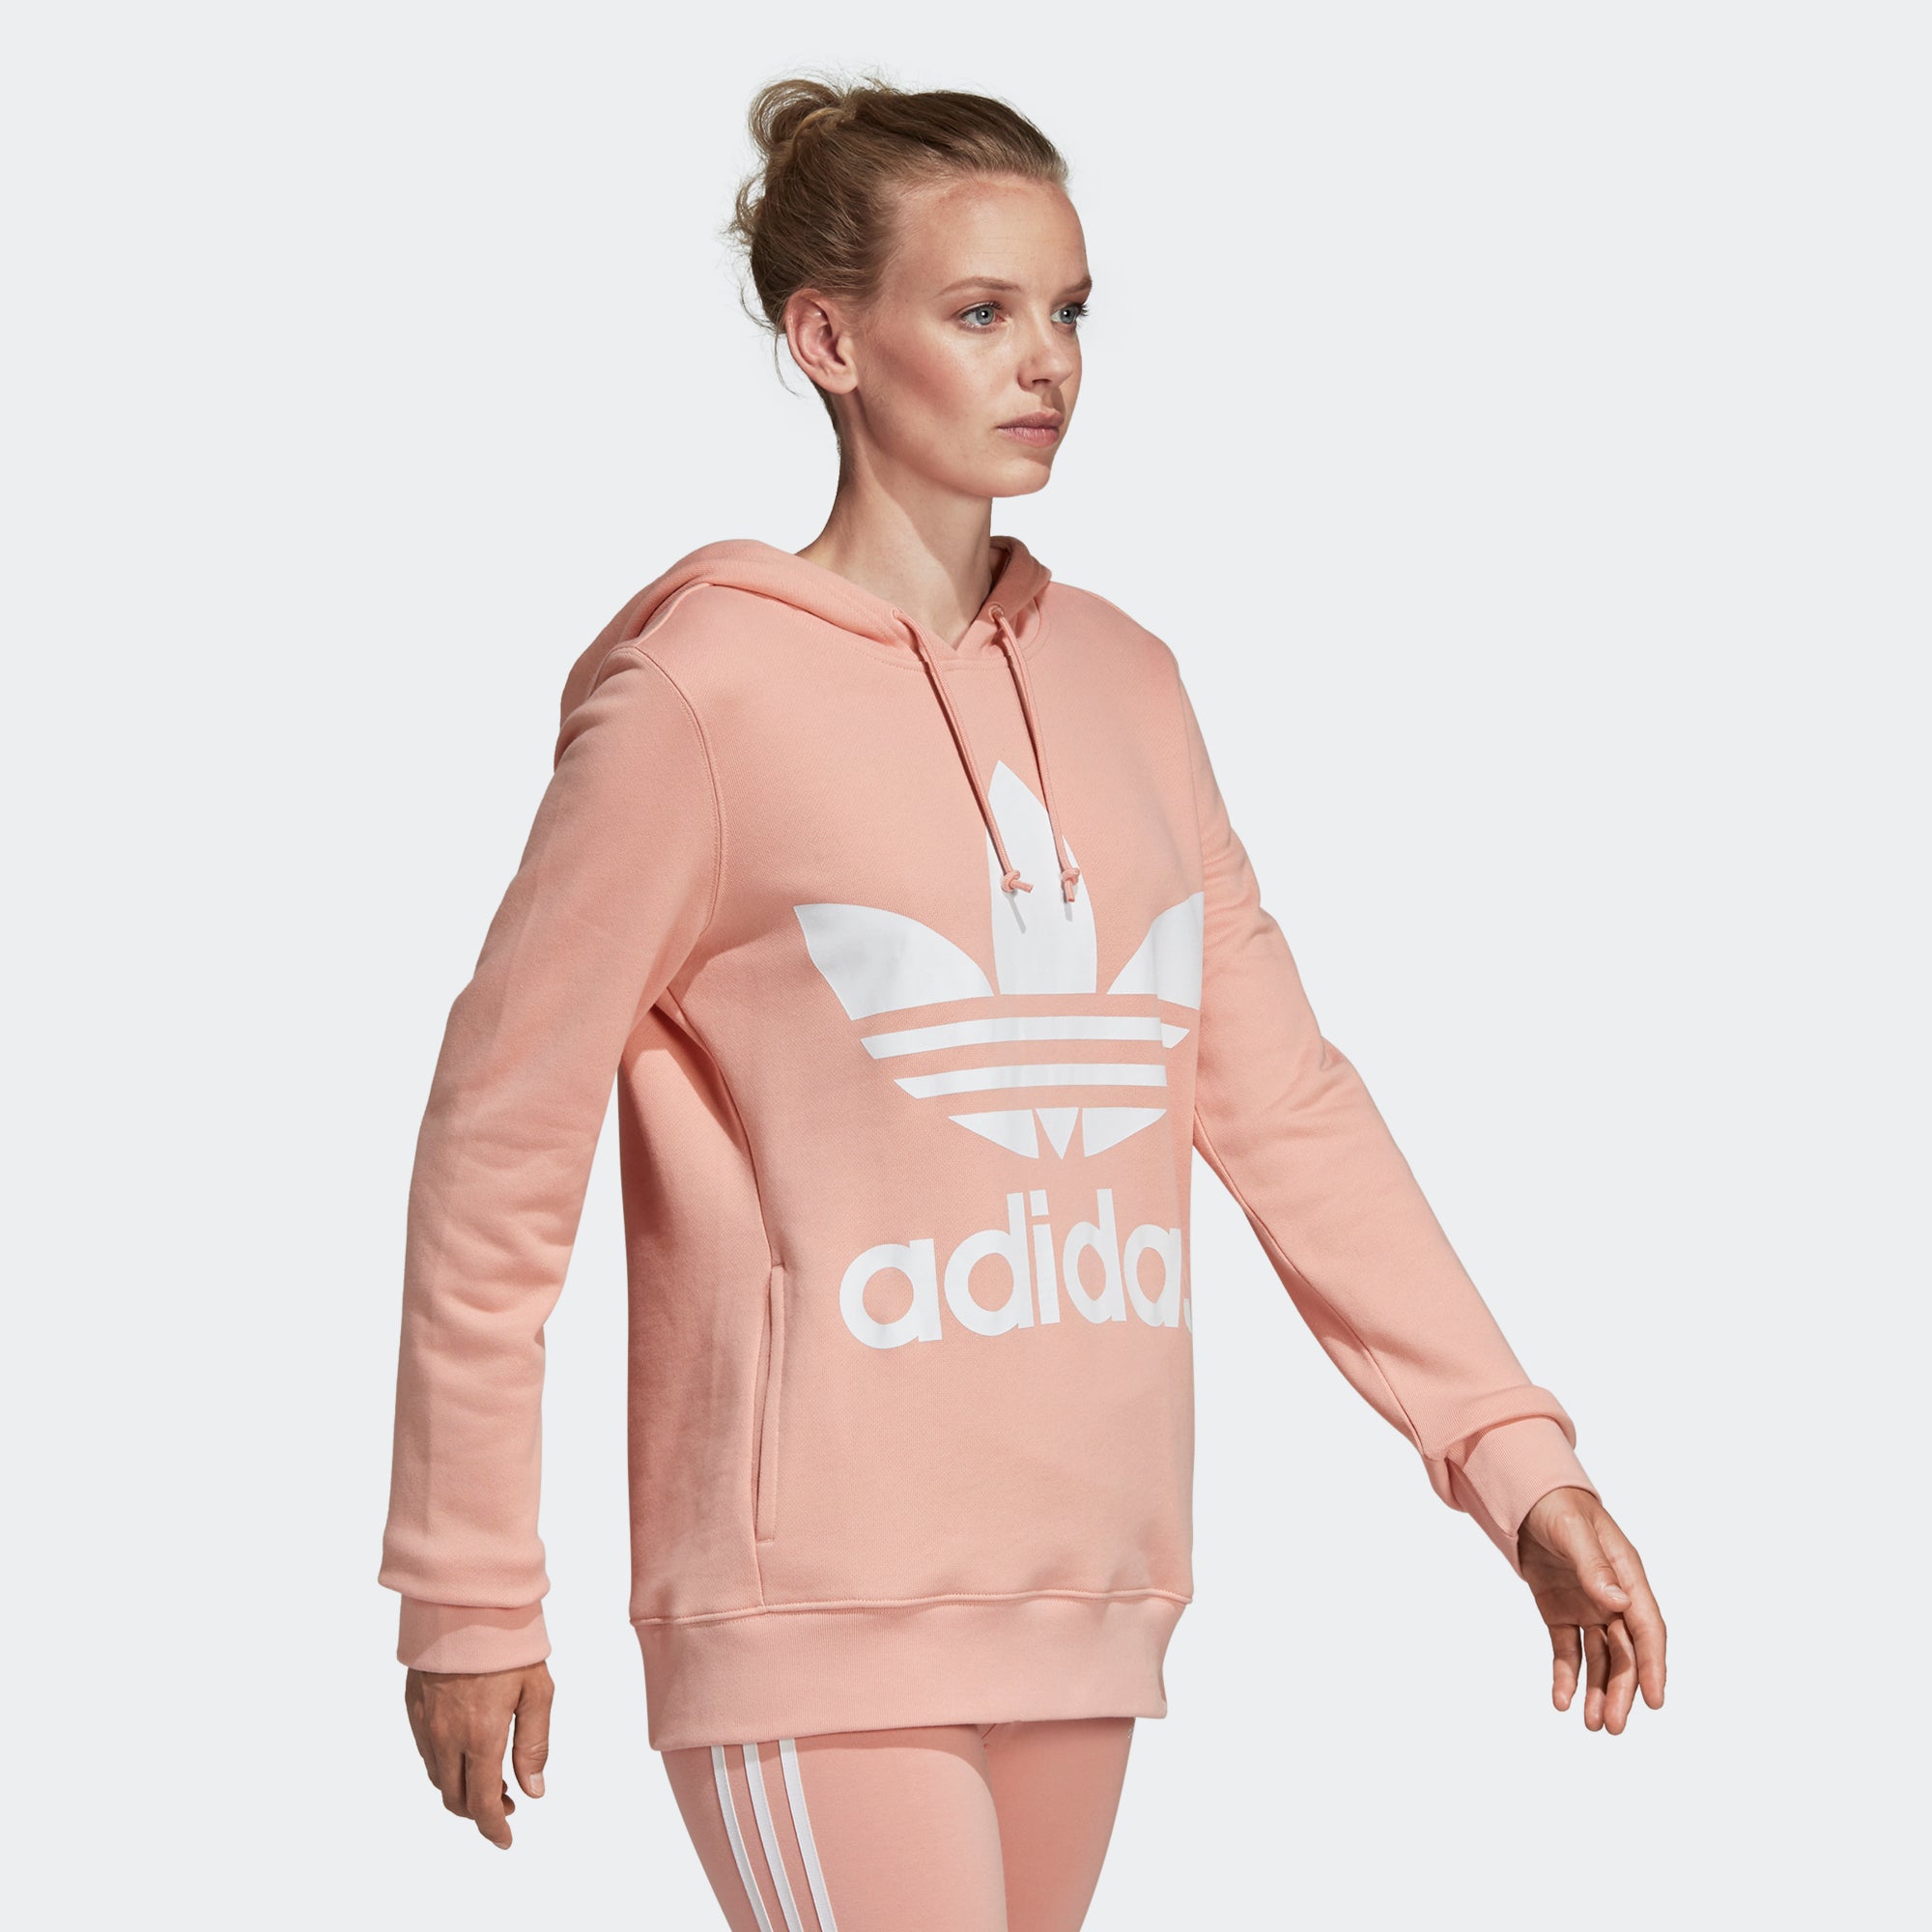 dust pink adidas hoodie